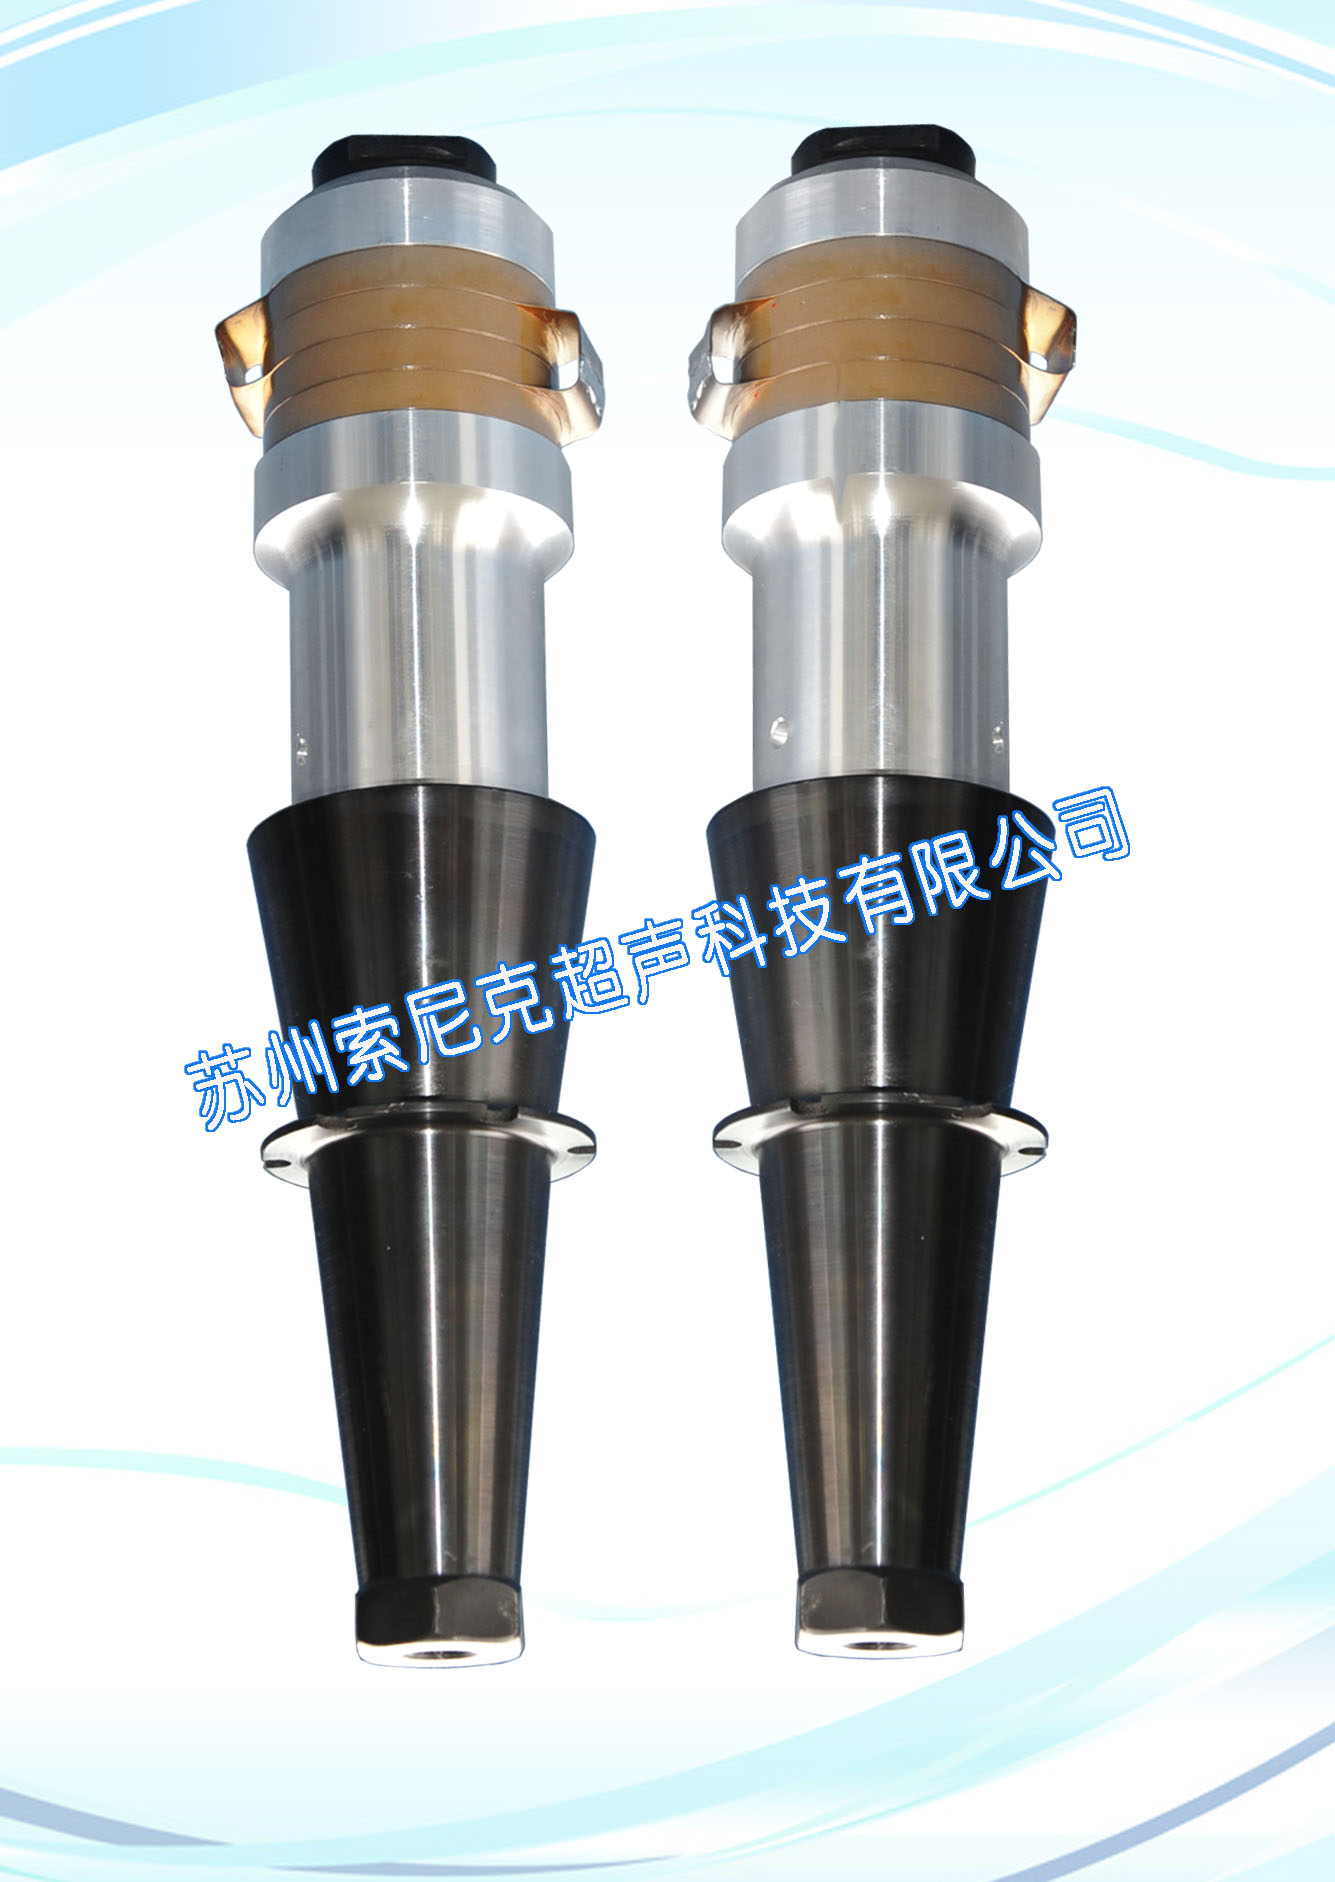 国产超声波焊接振动子,苏州超声波换能器规格,实验超声波换能器 JY-15-604Z 